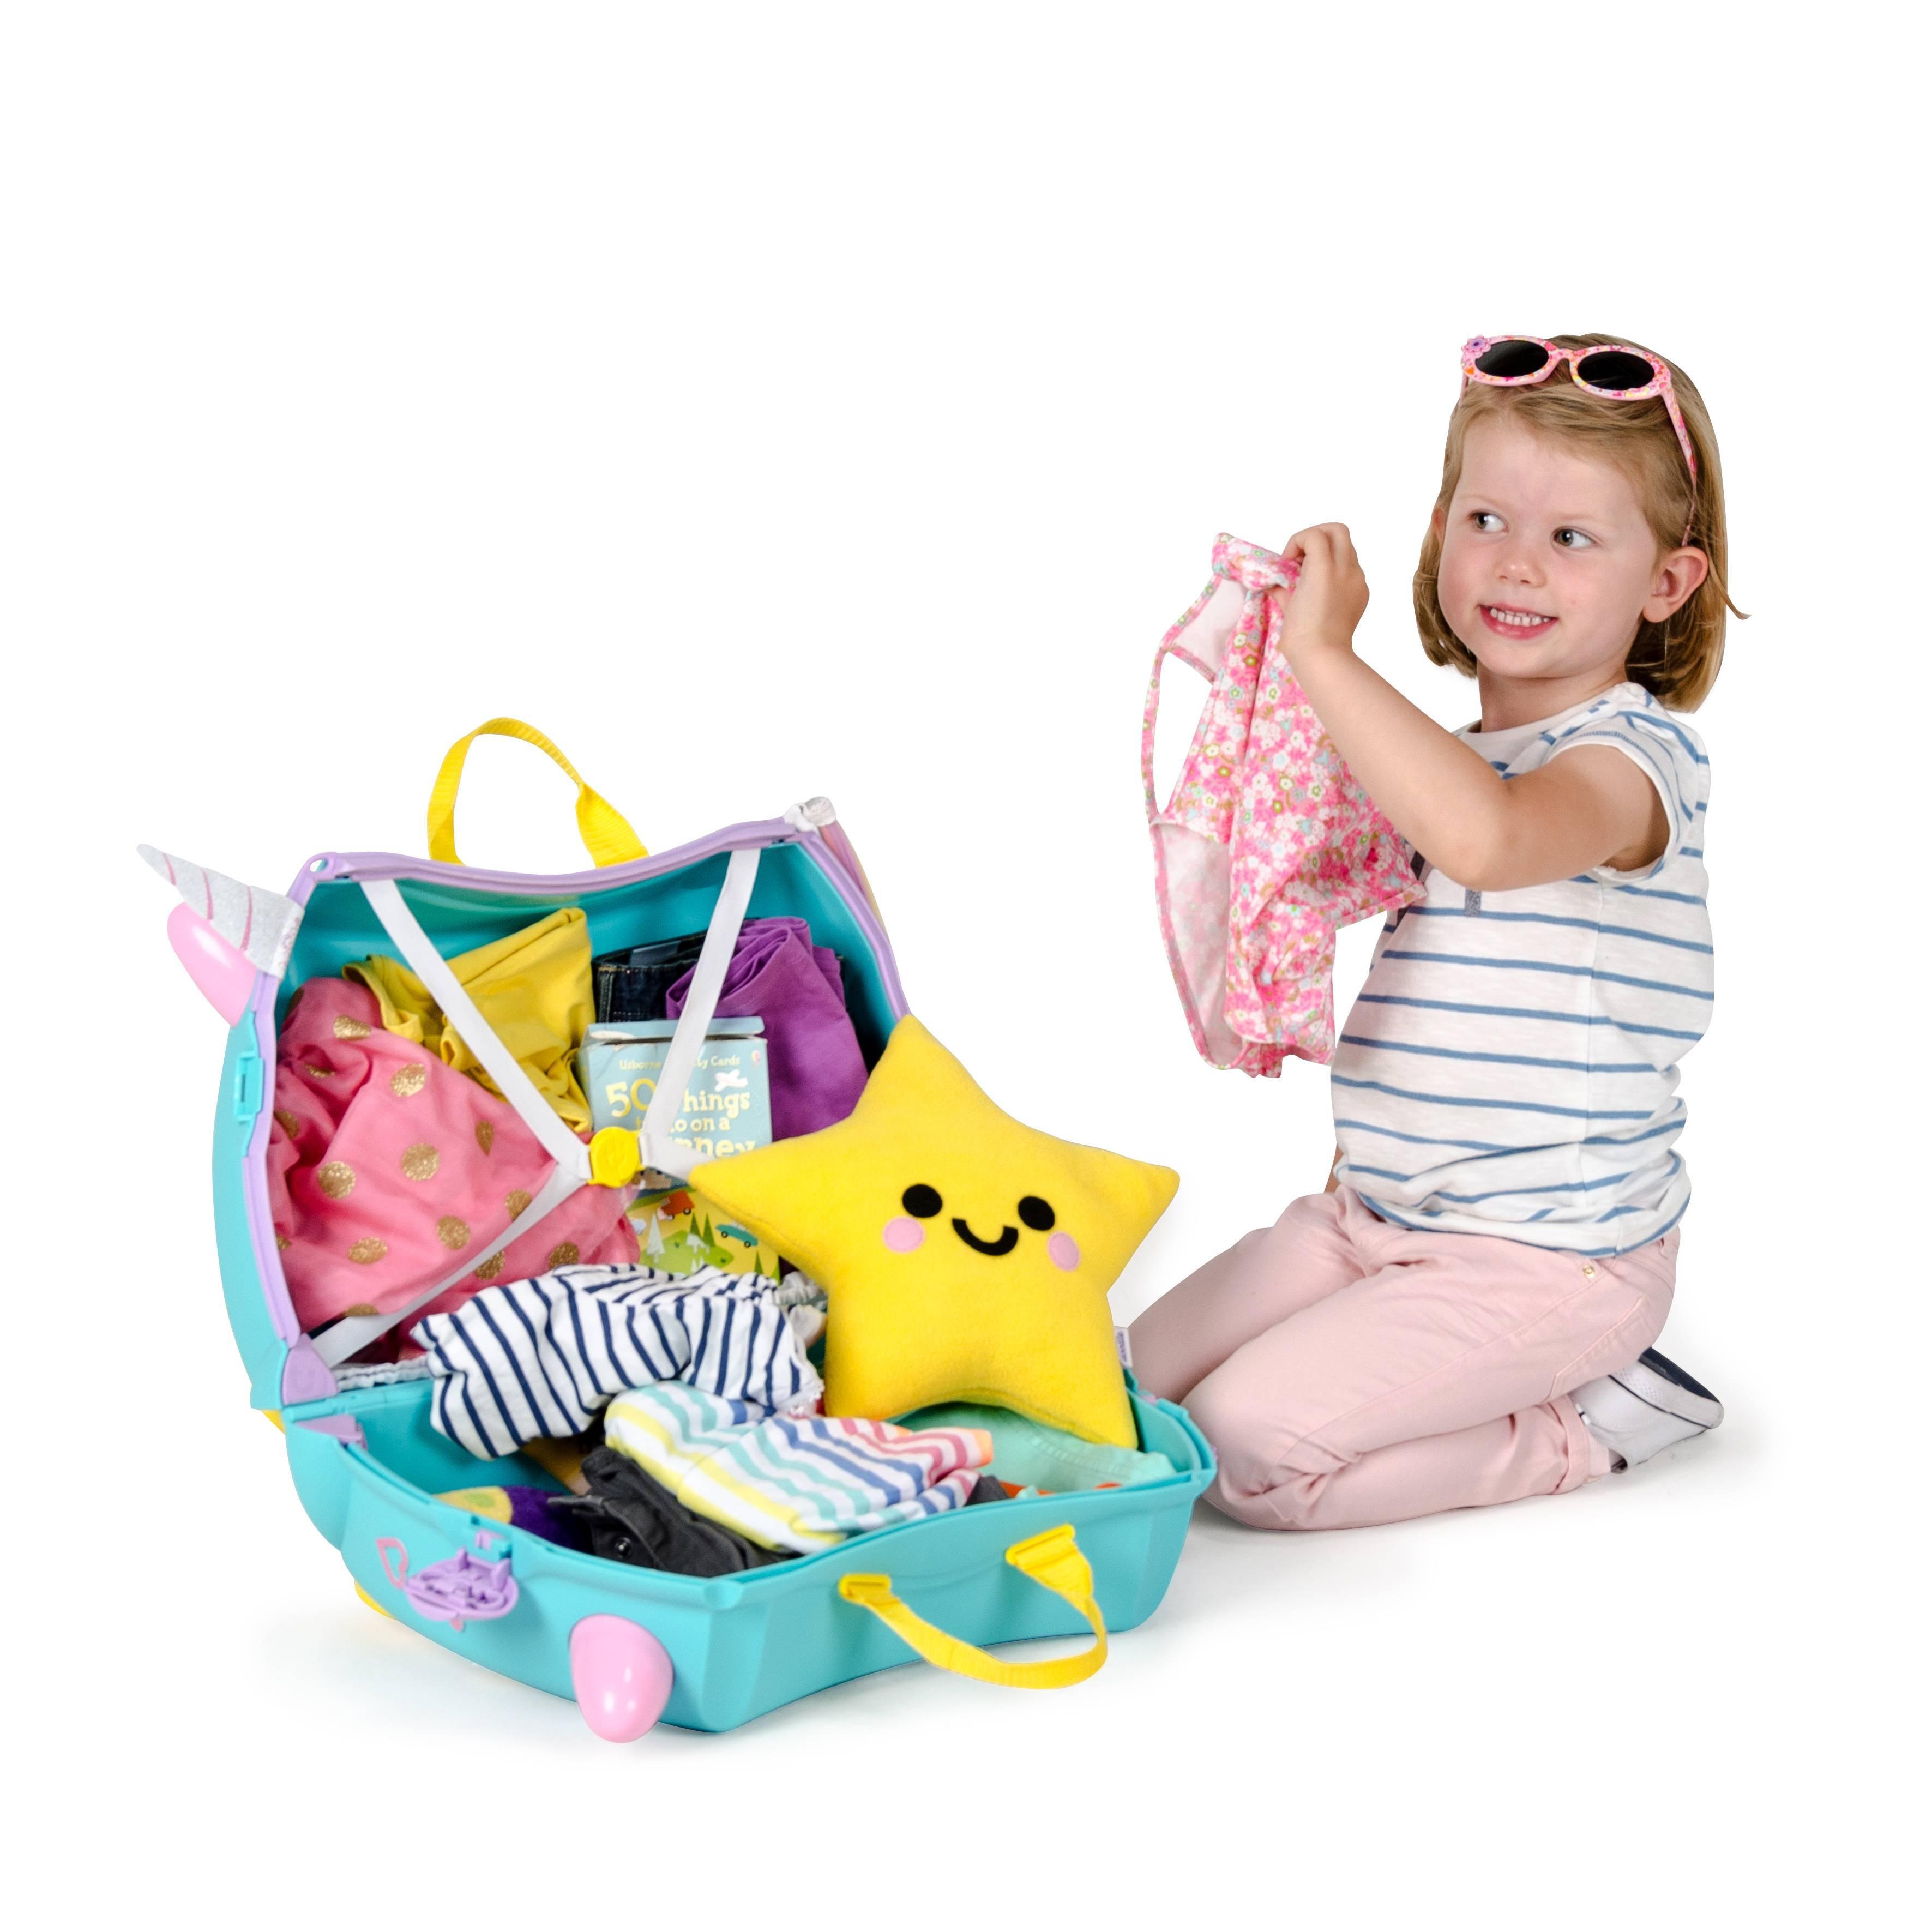 Trunki: jeżdżąca walizka dla dzieci jednorożec Una - Noski Noski